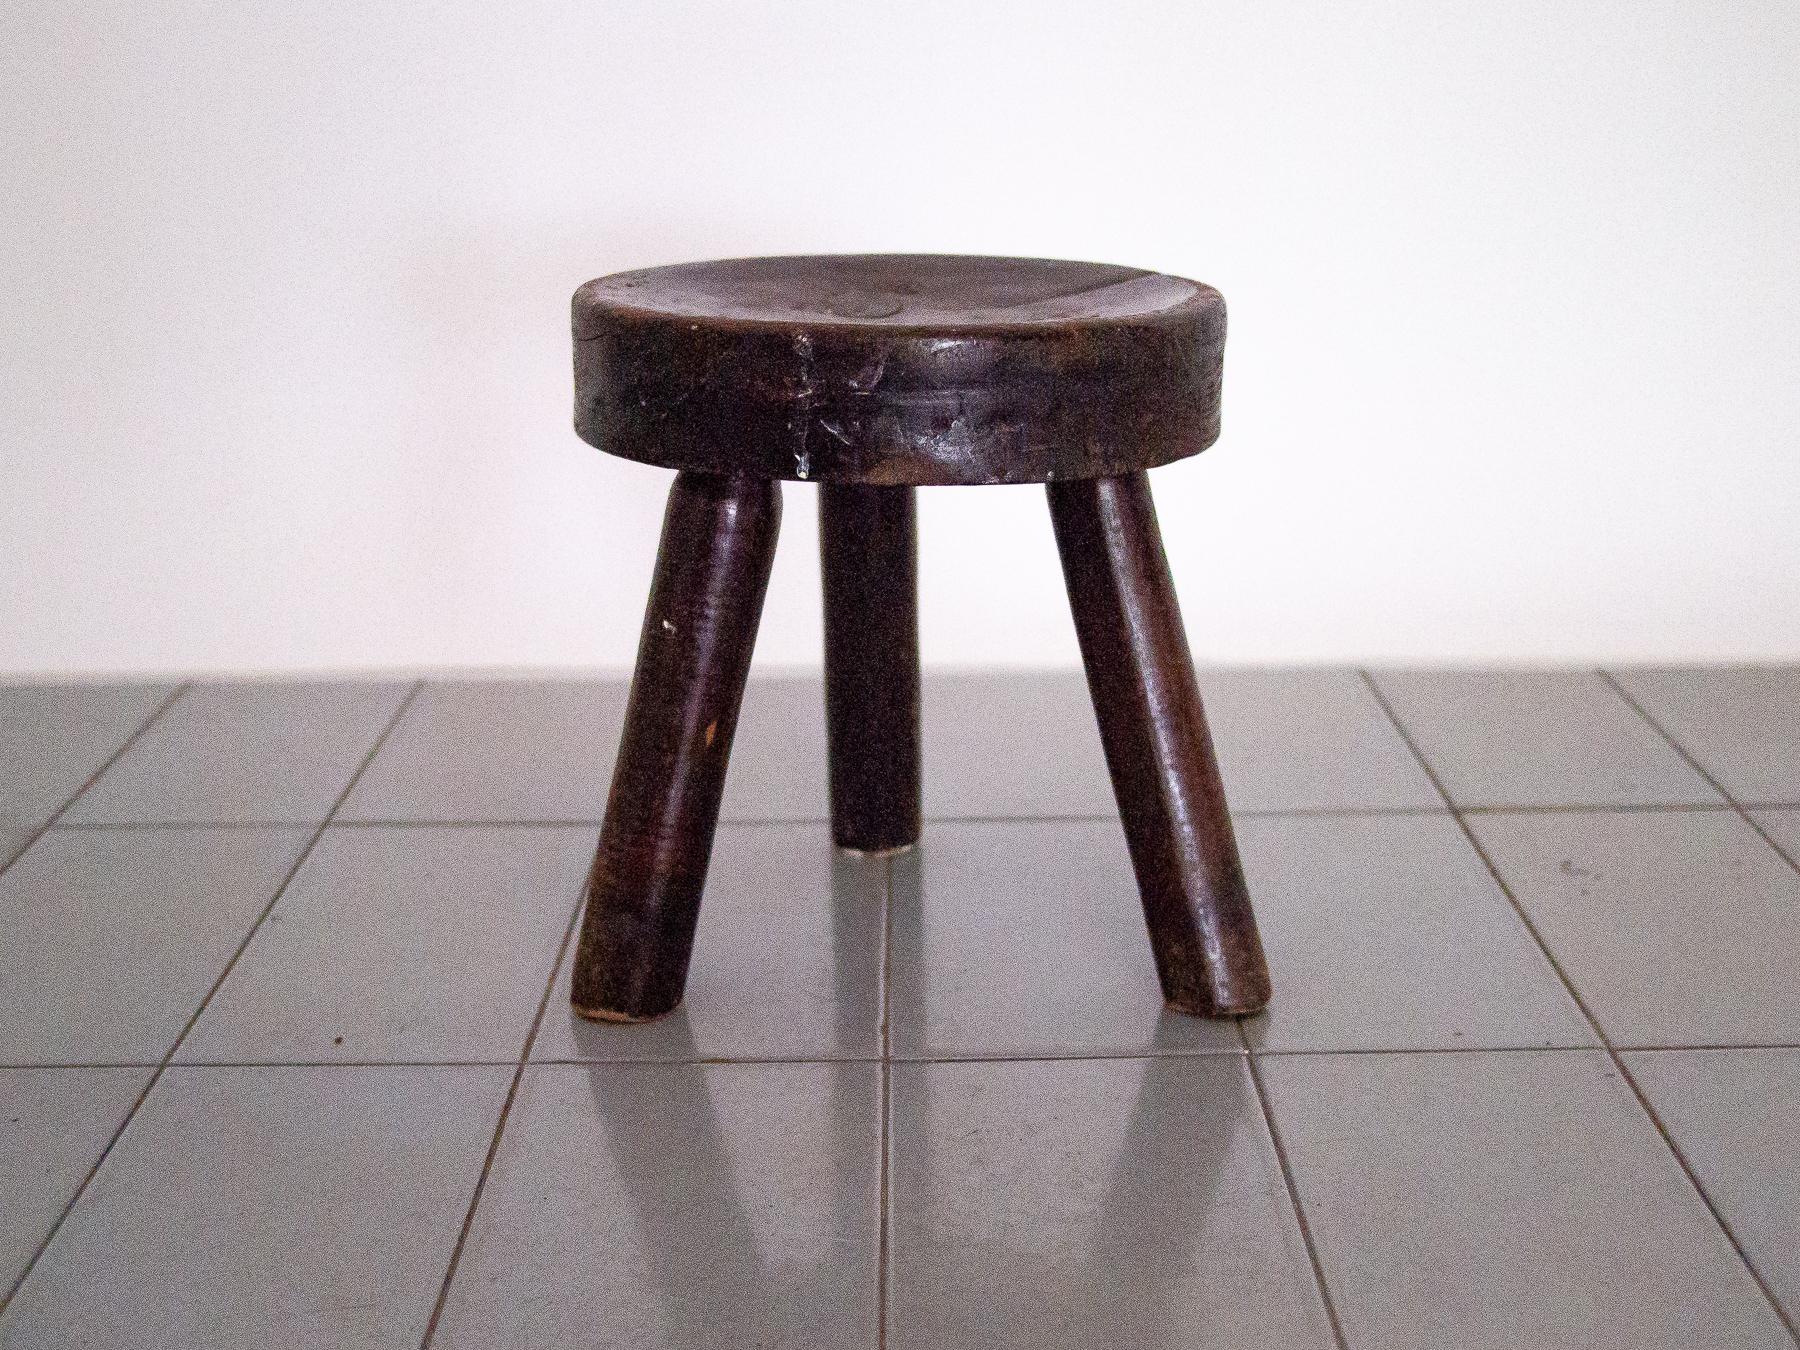 1900s Stool in Hardwood, Brazilian Rustic Furniture 1